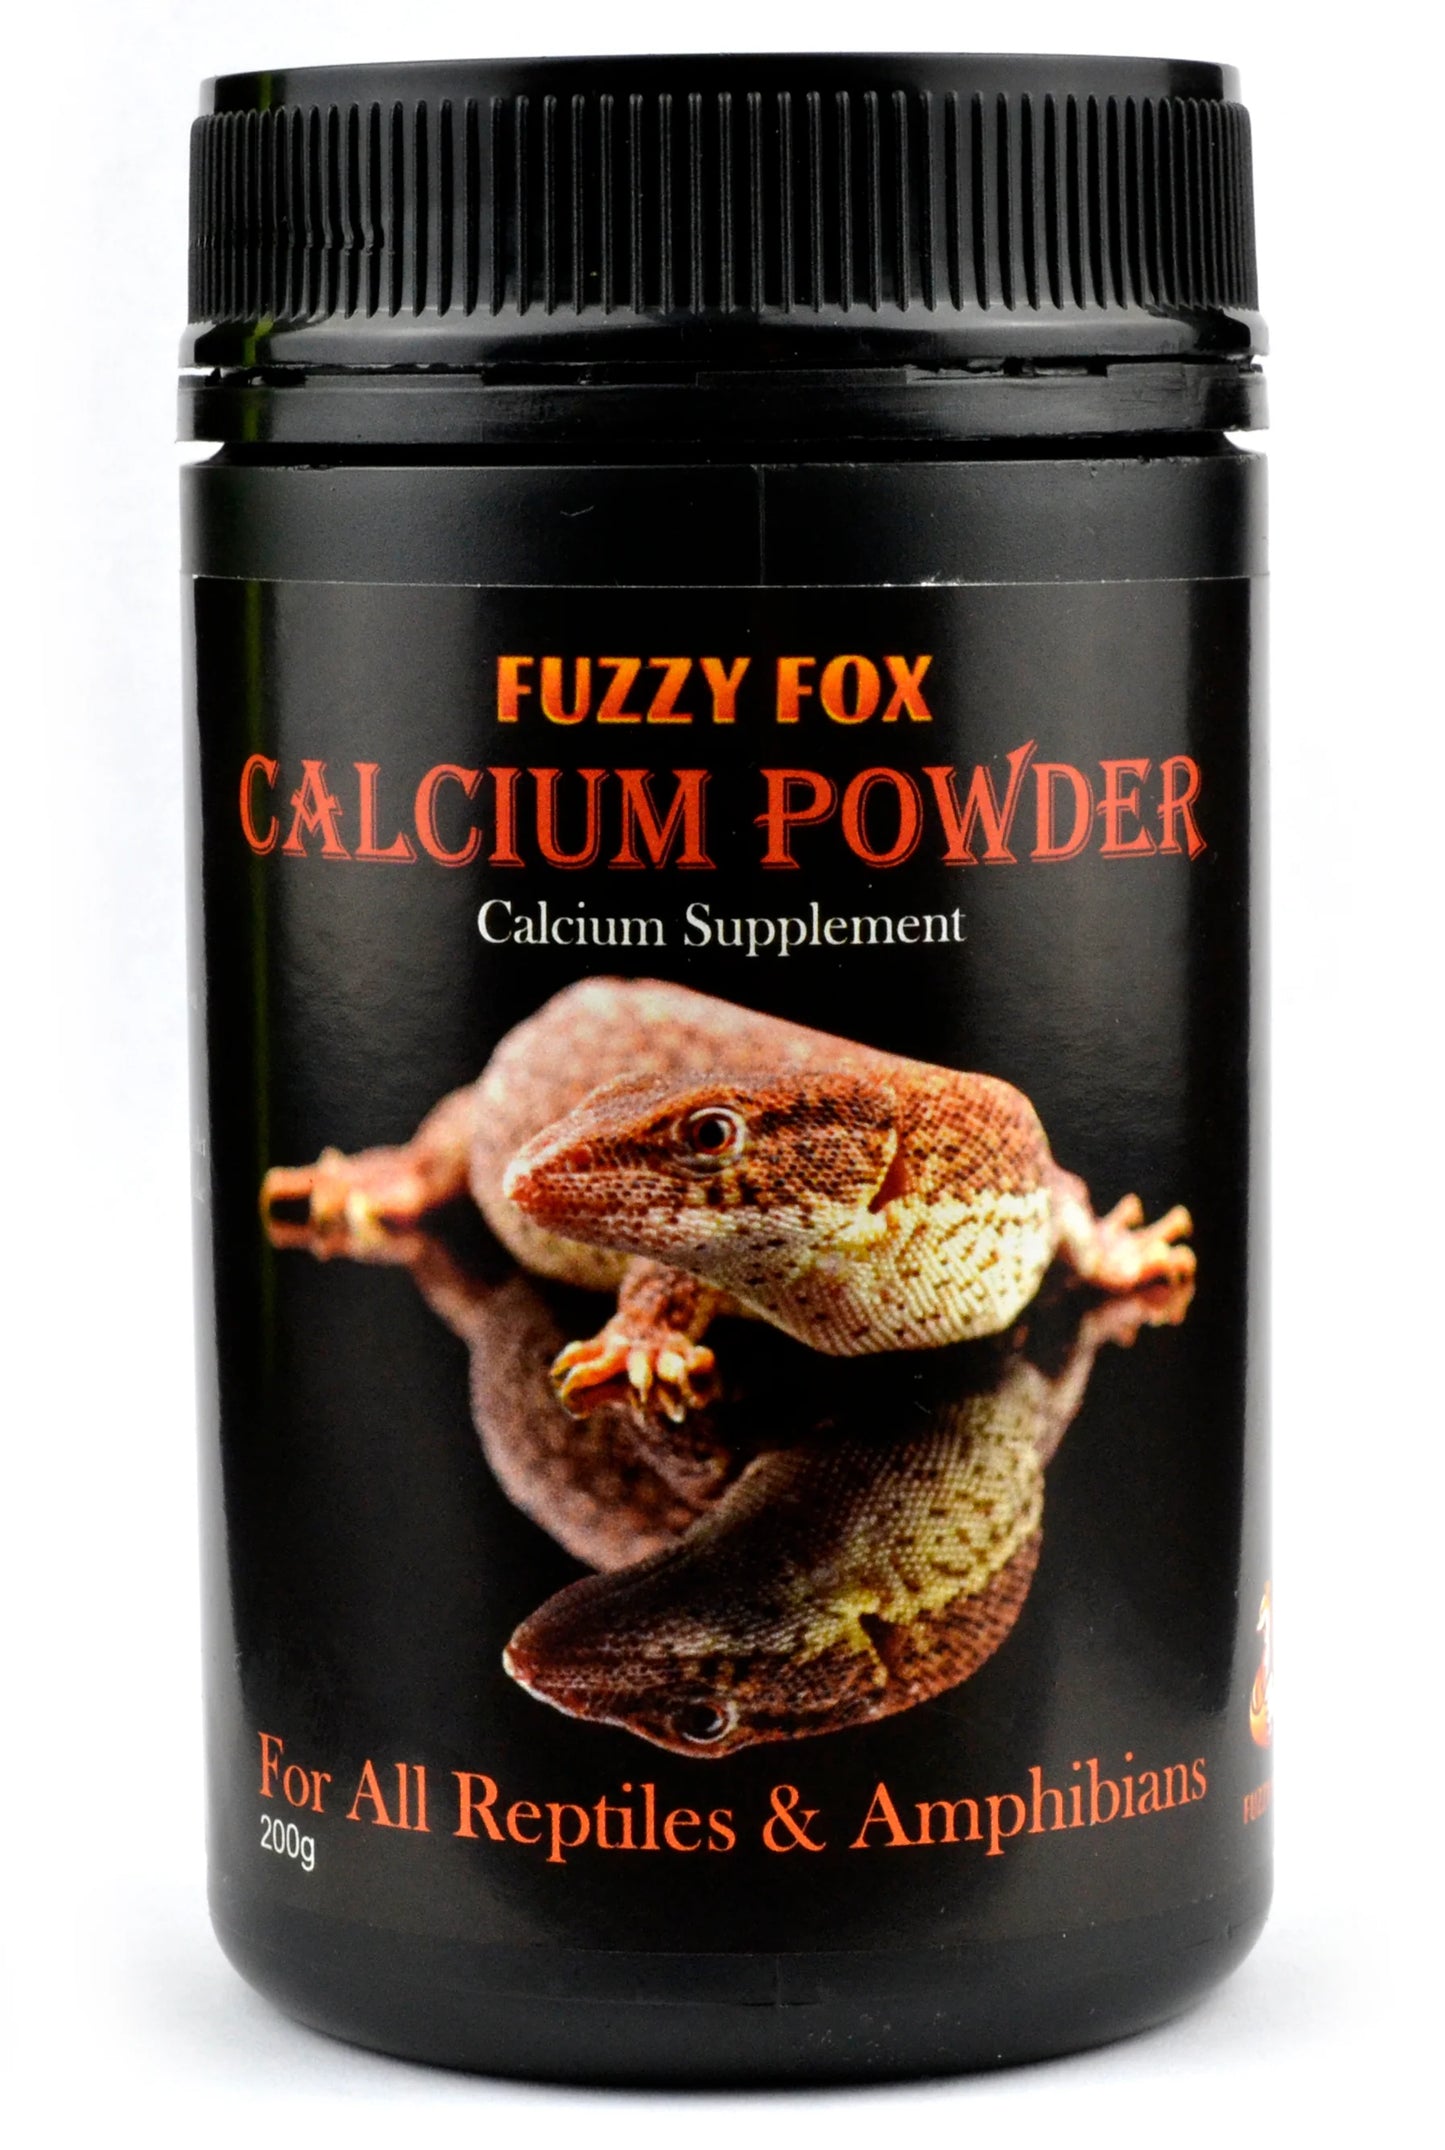 Fuzzy Fox Reptile Calcium Powder